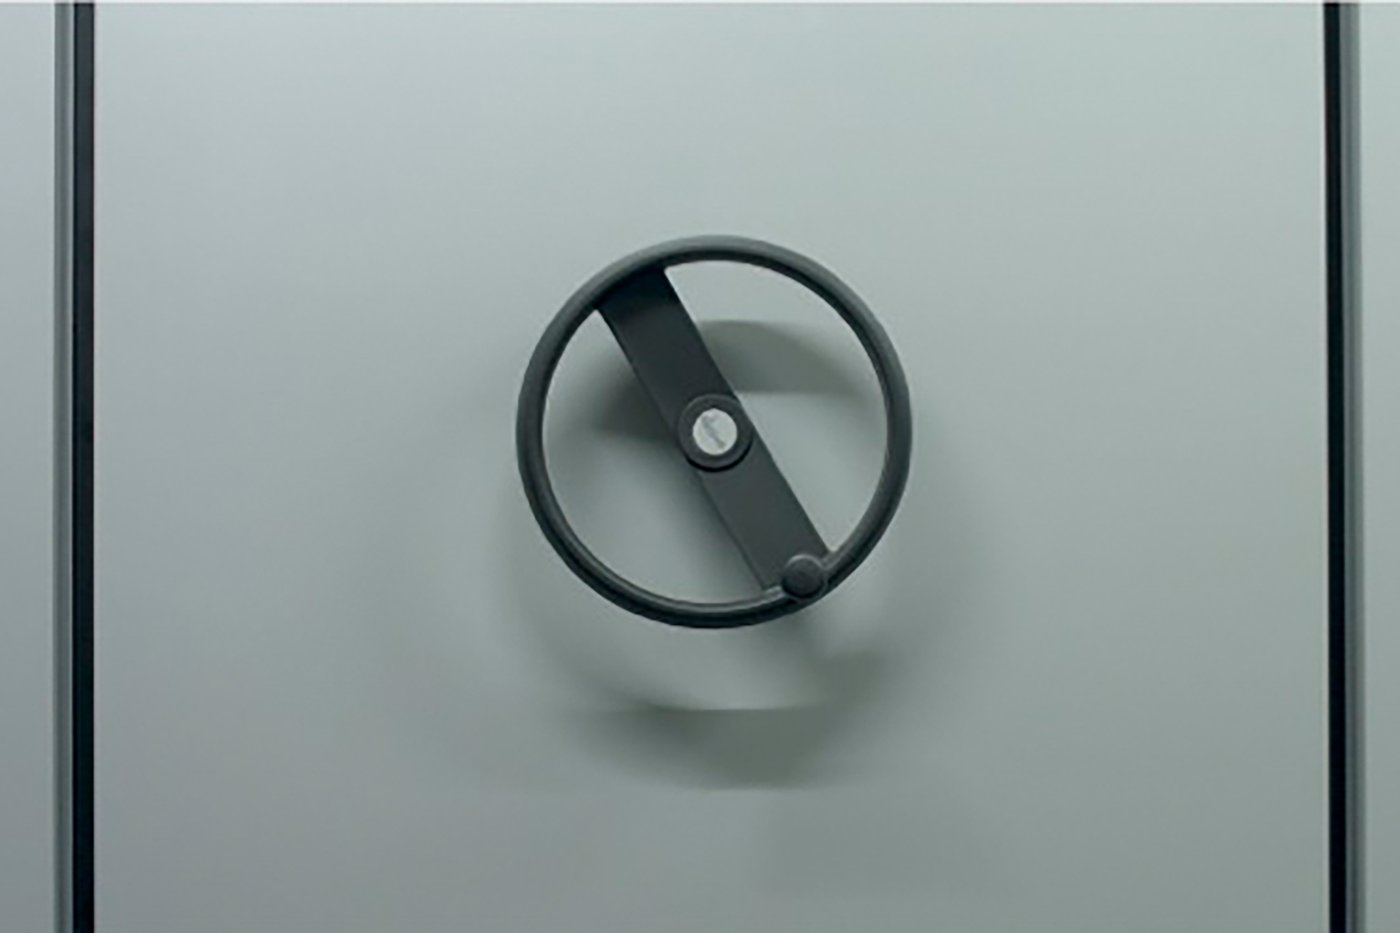 Ein Ausschnitt eines Archivregals, man sieht die graue Seitenwand und ein schwarzes Rad, mit dem das Regal bewegt werden kann.